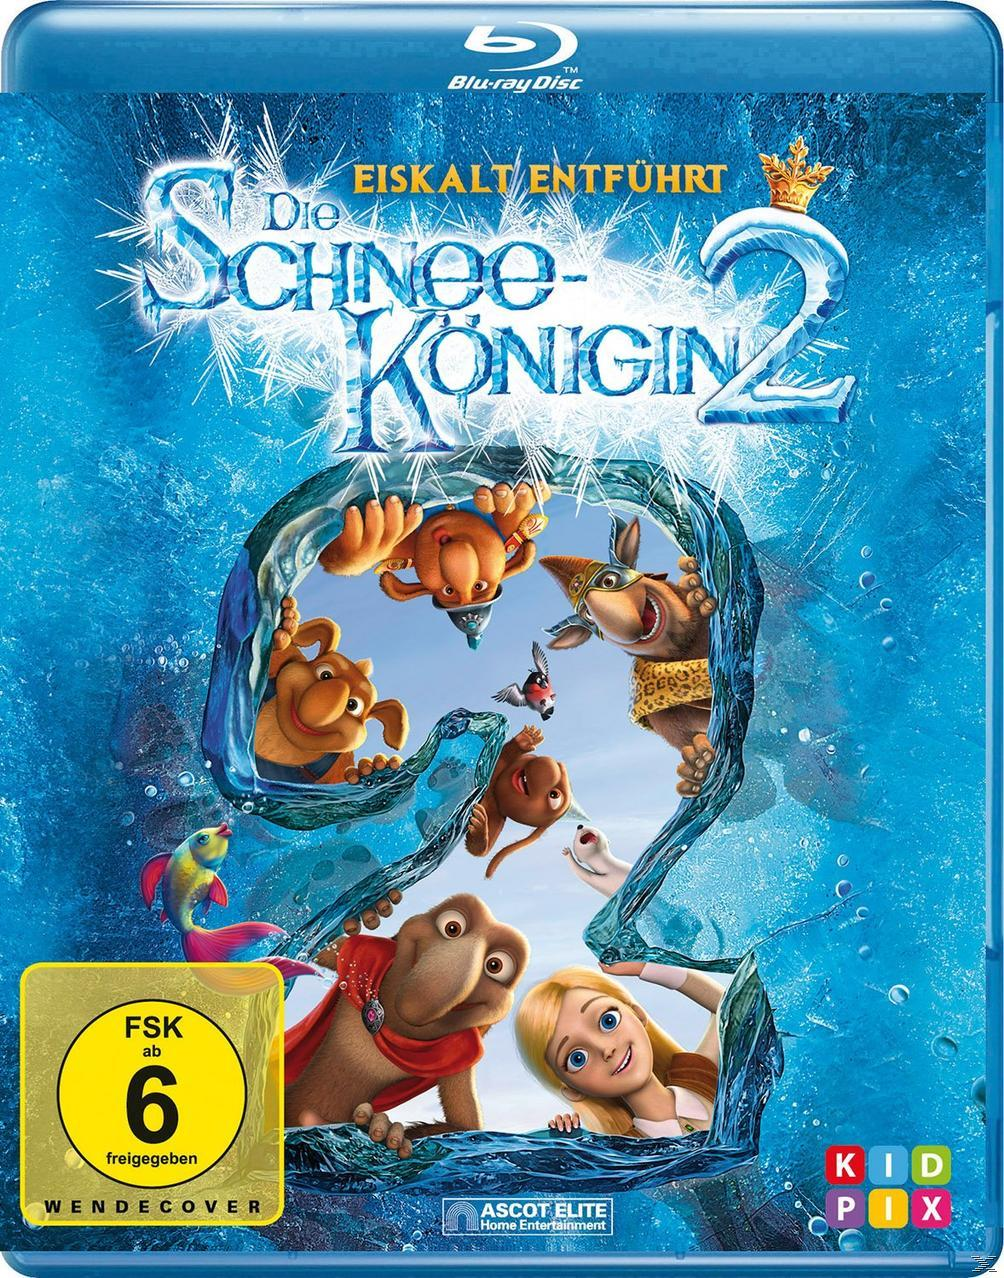 Schneekönigin 2 Blu-ray Die